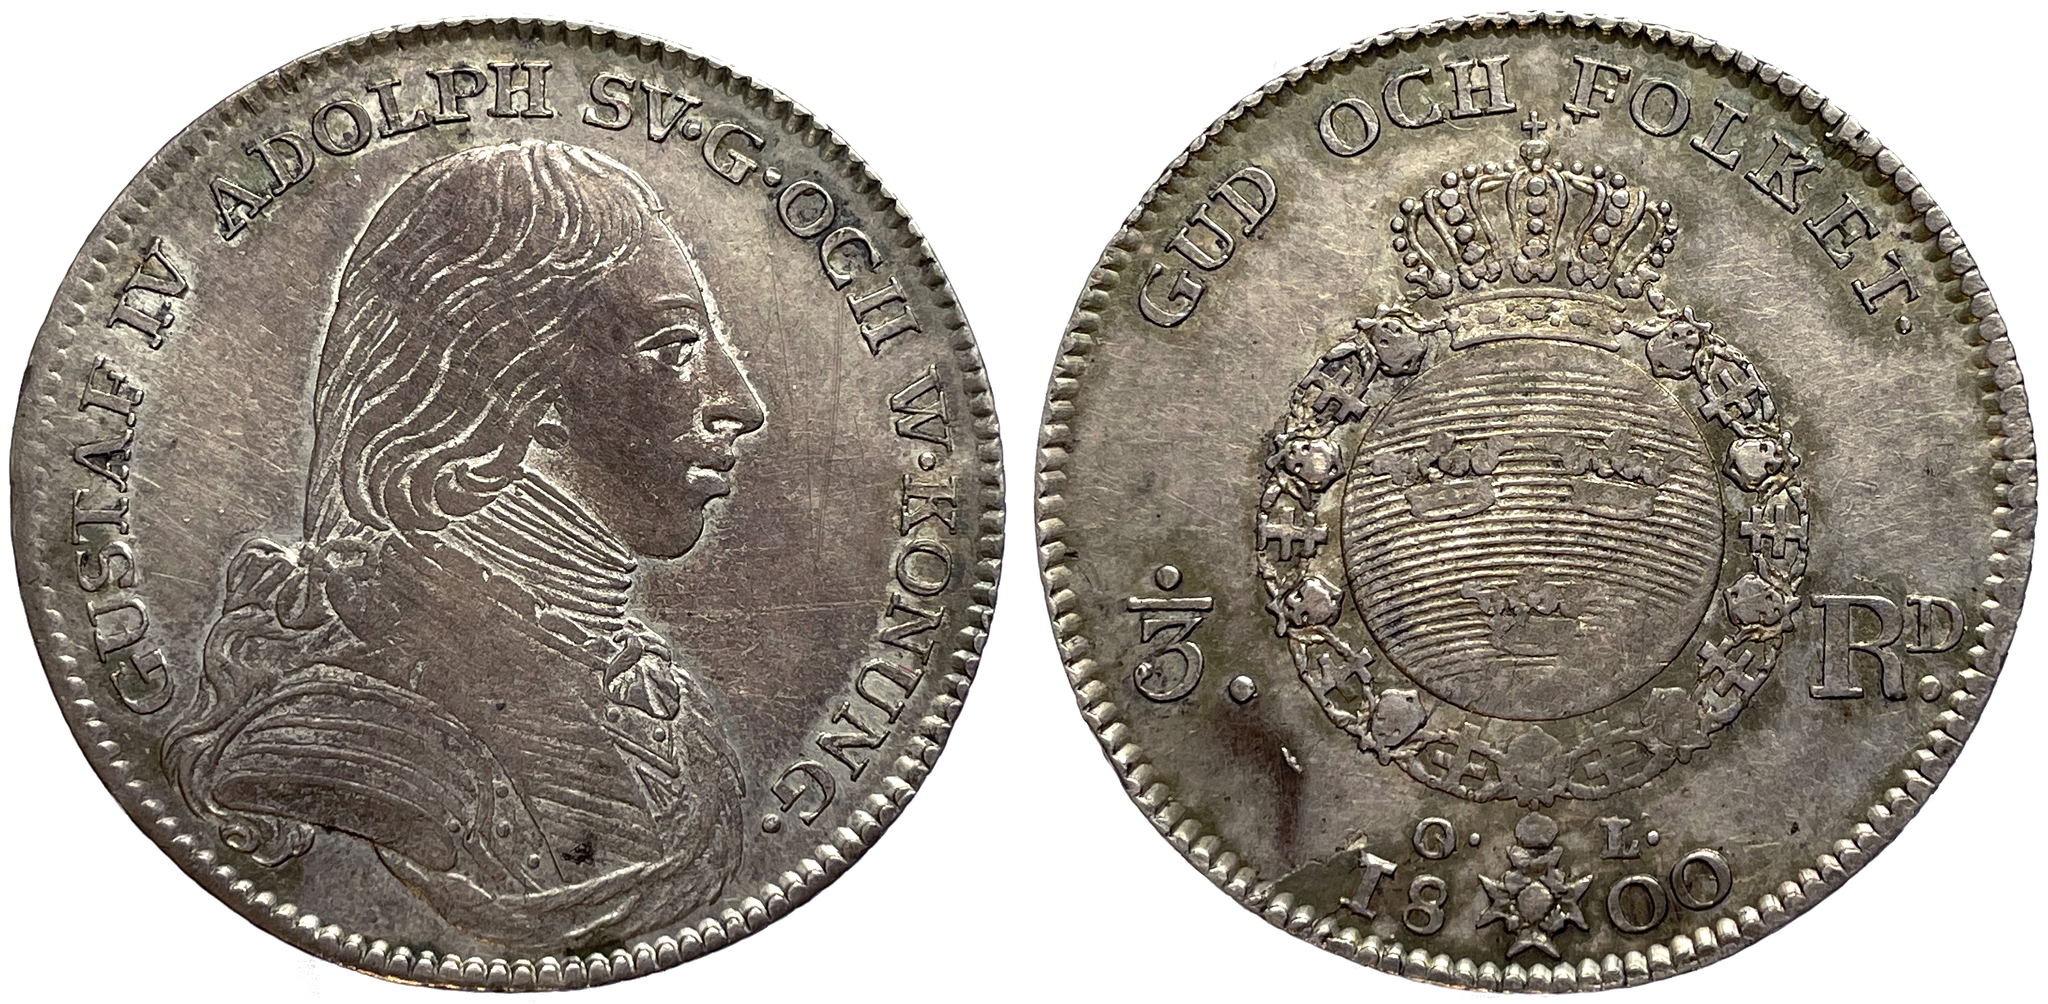 Gustav IV Adolf - 1/3 Riksdaler 1800